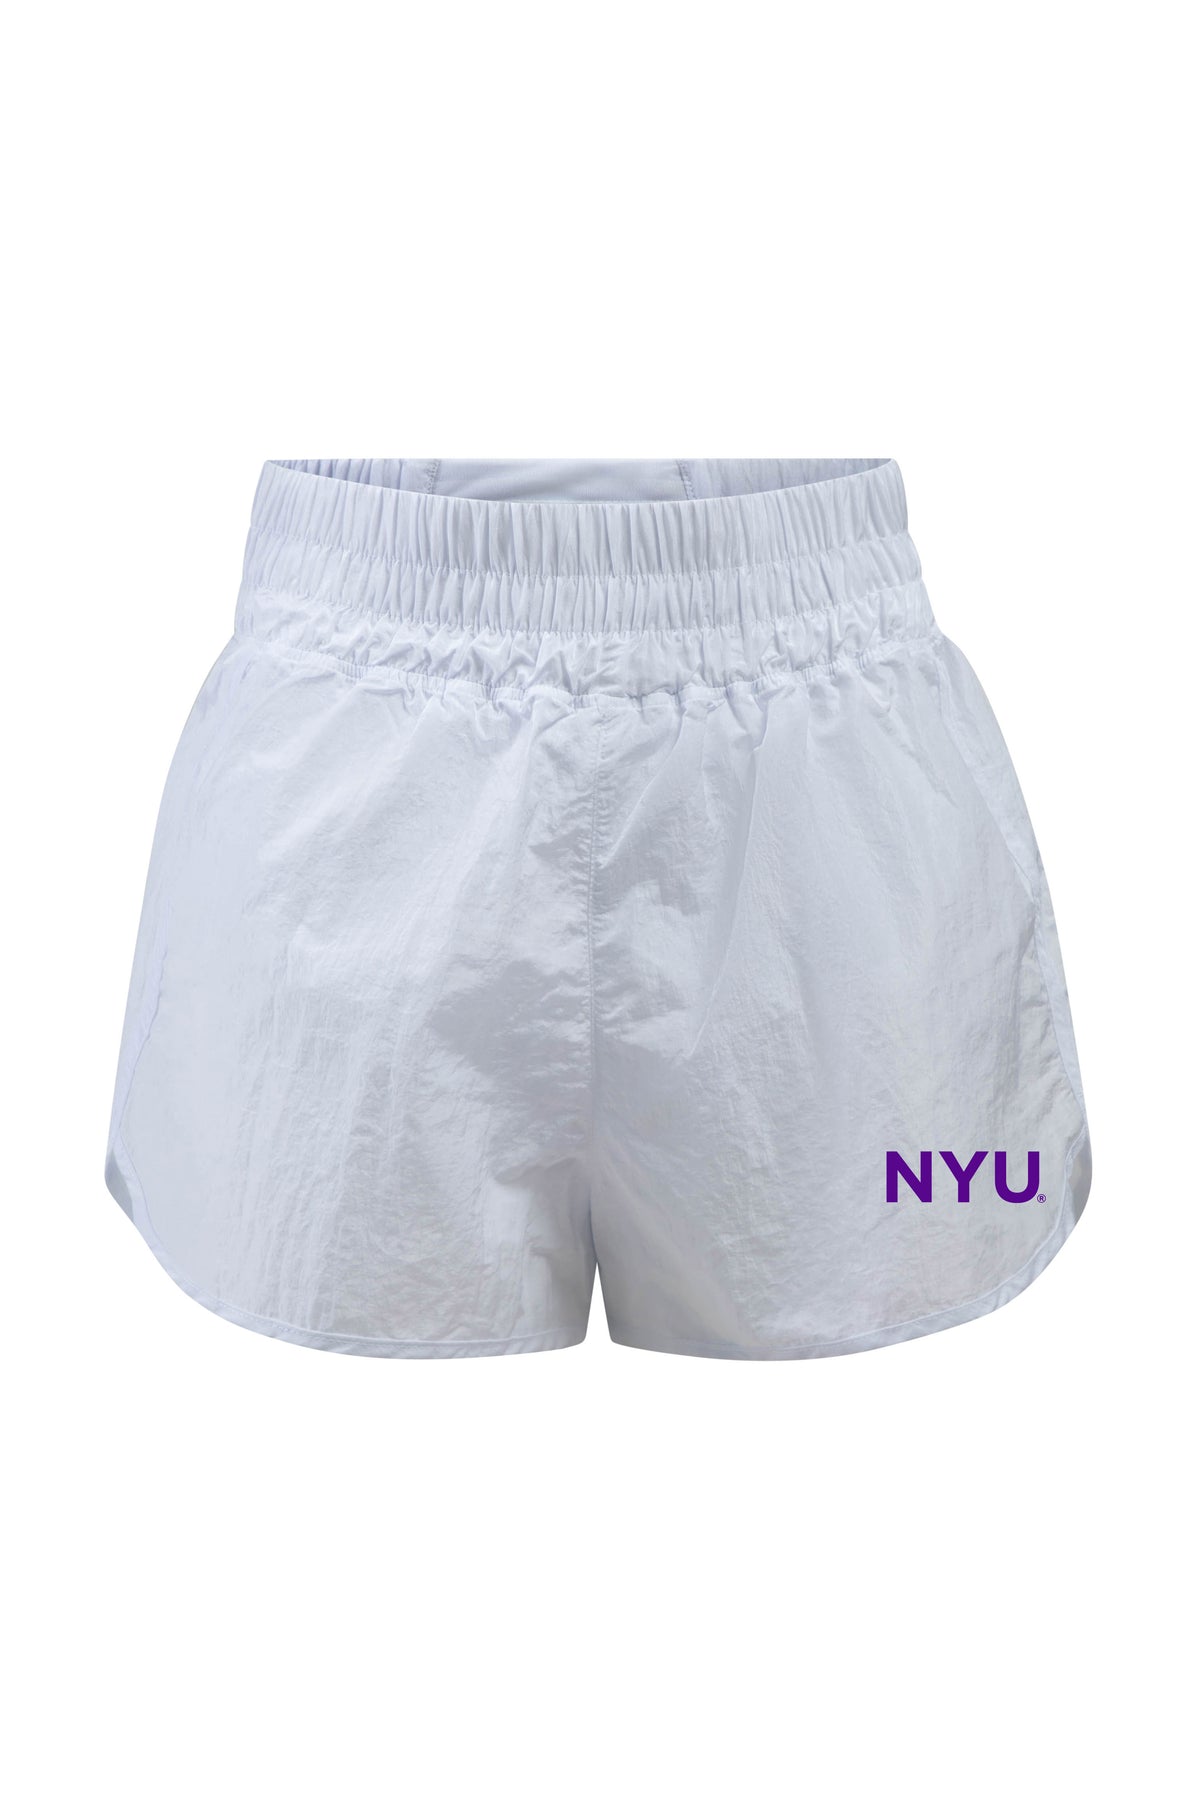 New York University Boxer Short